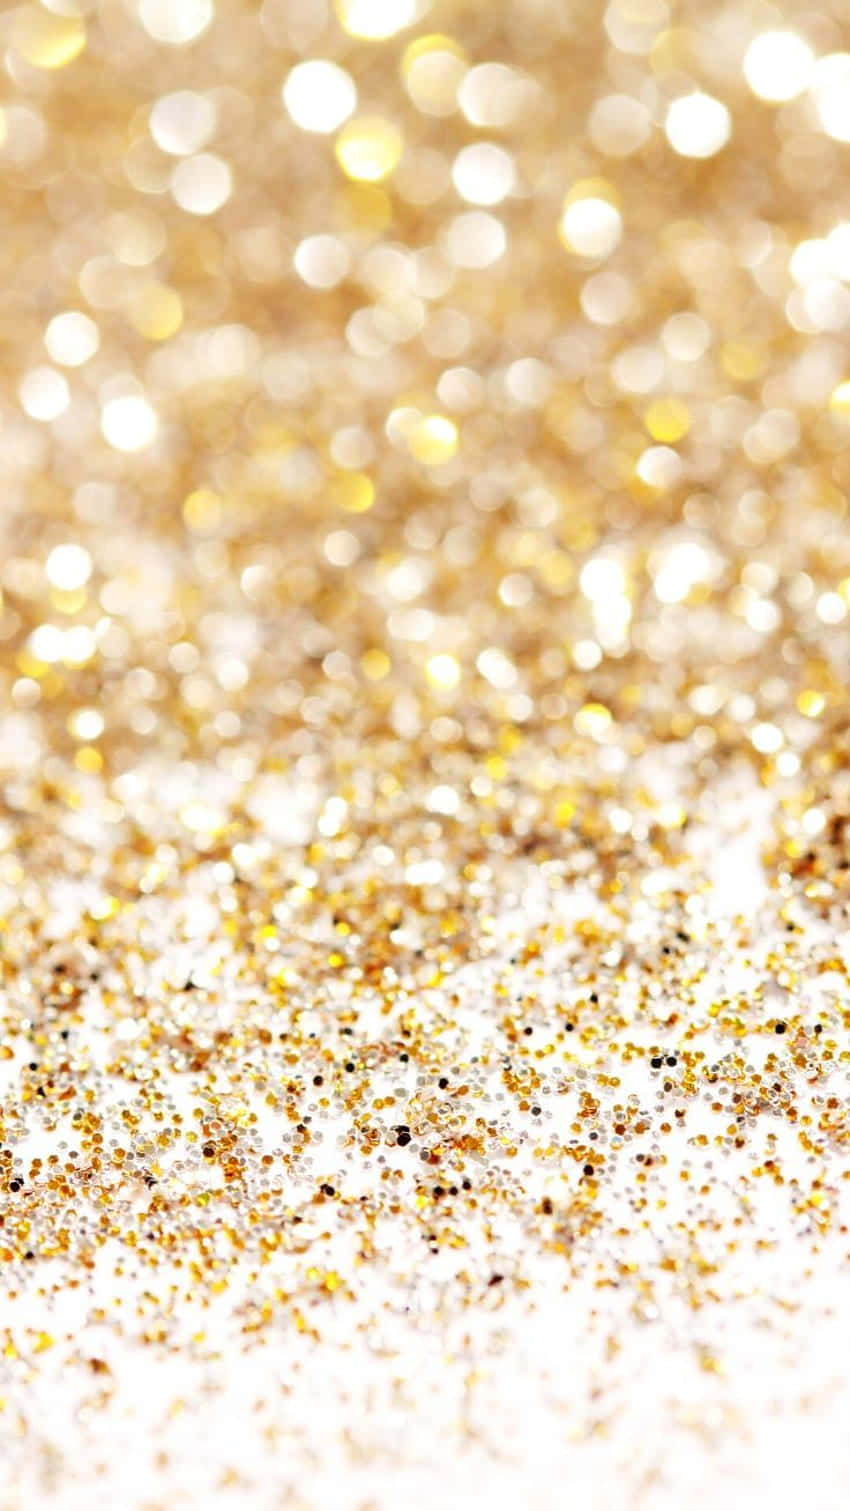 Umclose-up De Glitter Dourado Em Um Fundo Branco. Papel de Parede